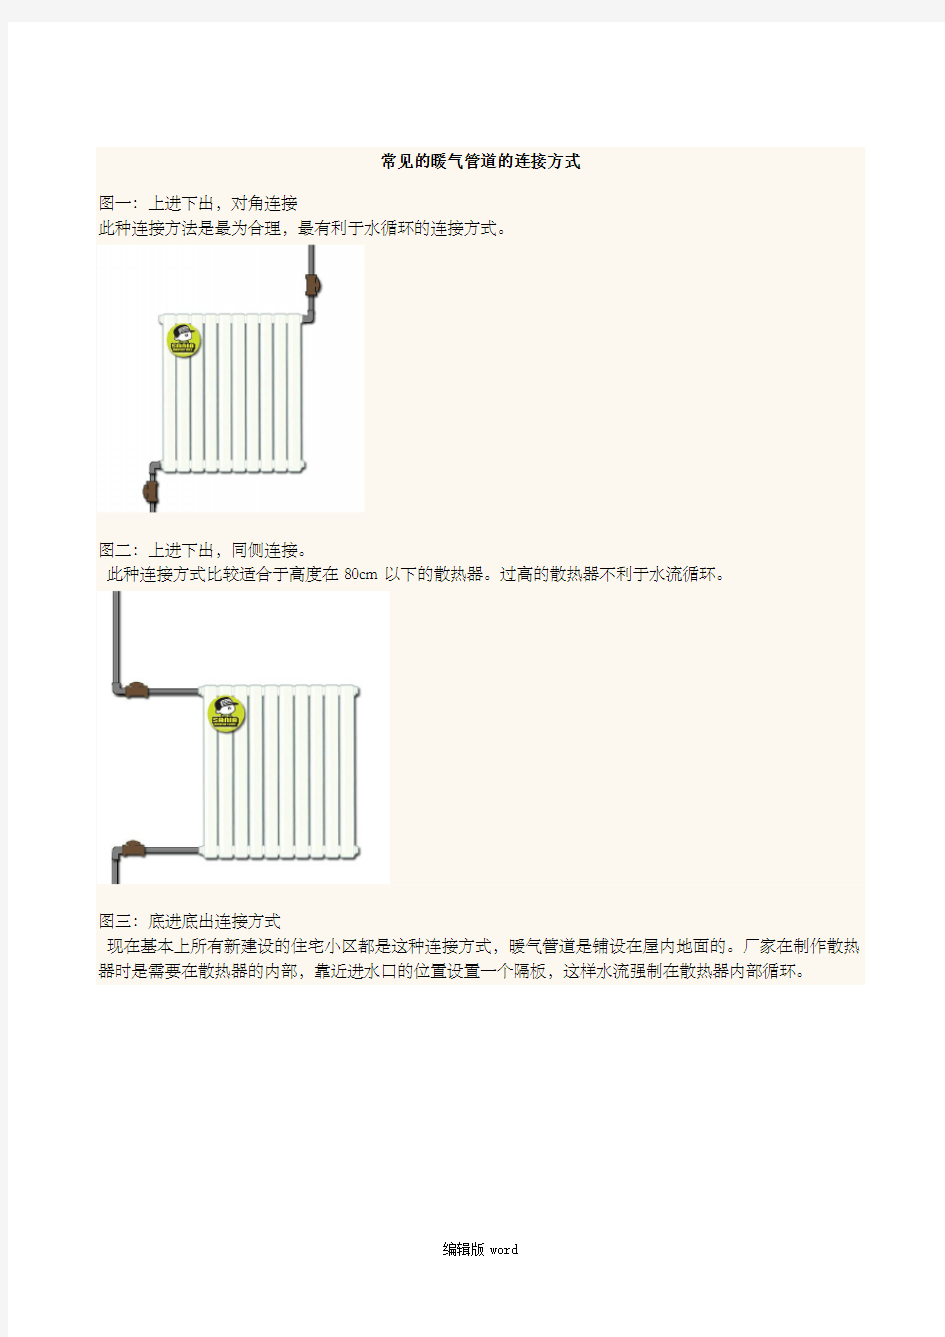 常见的暖气管道的连接方式